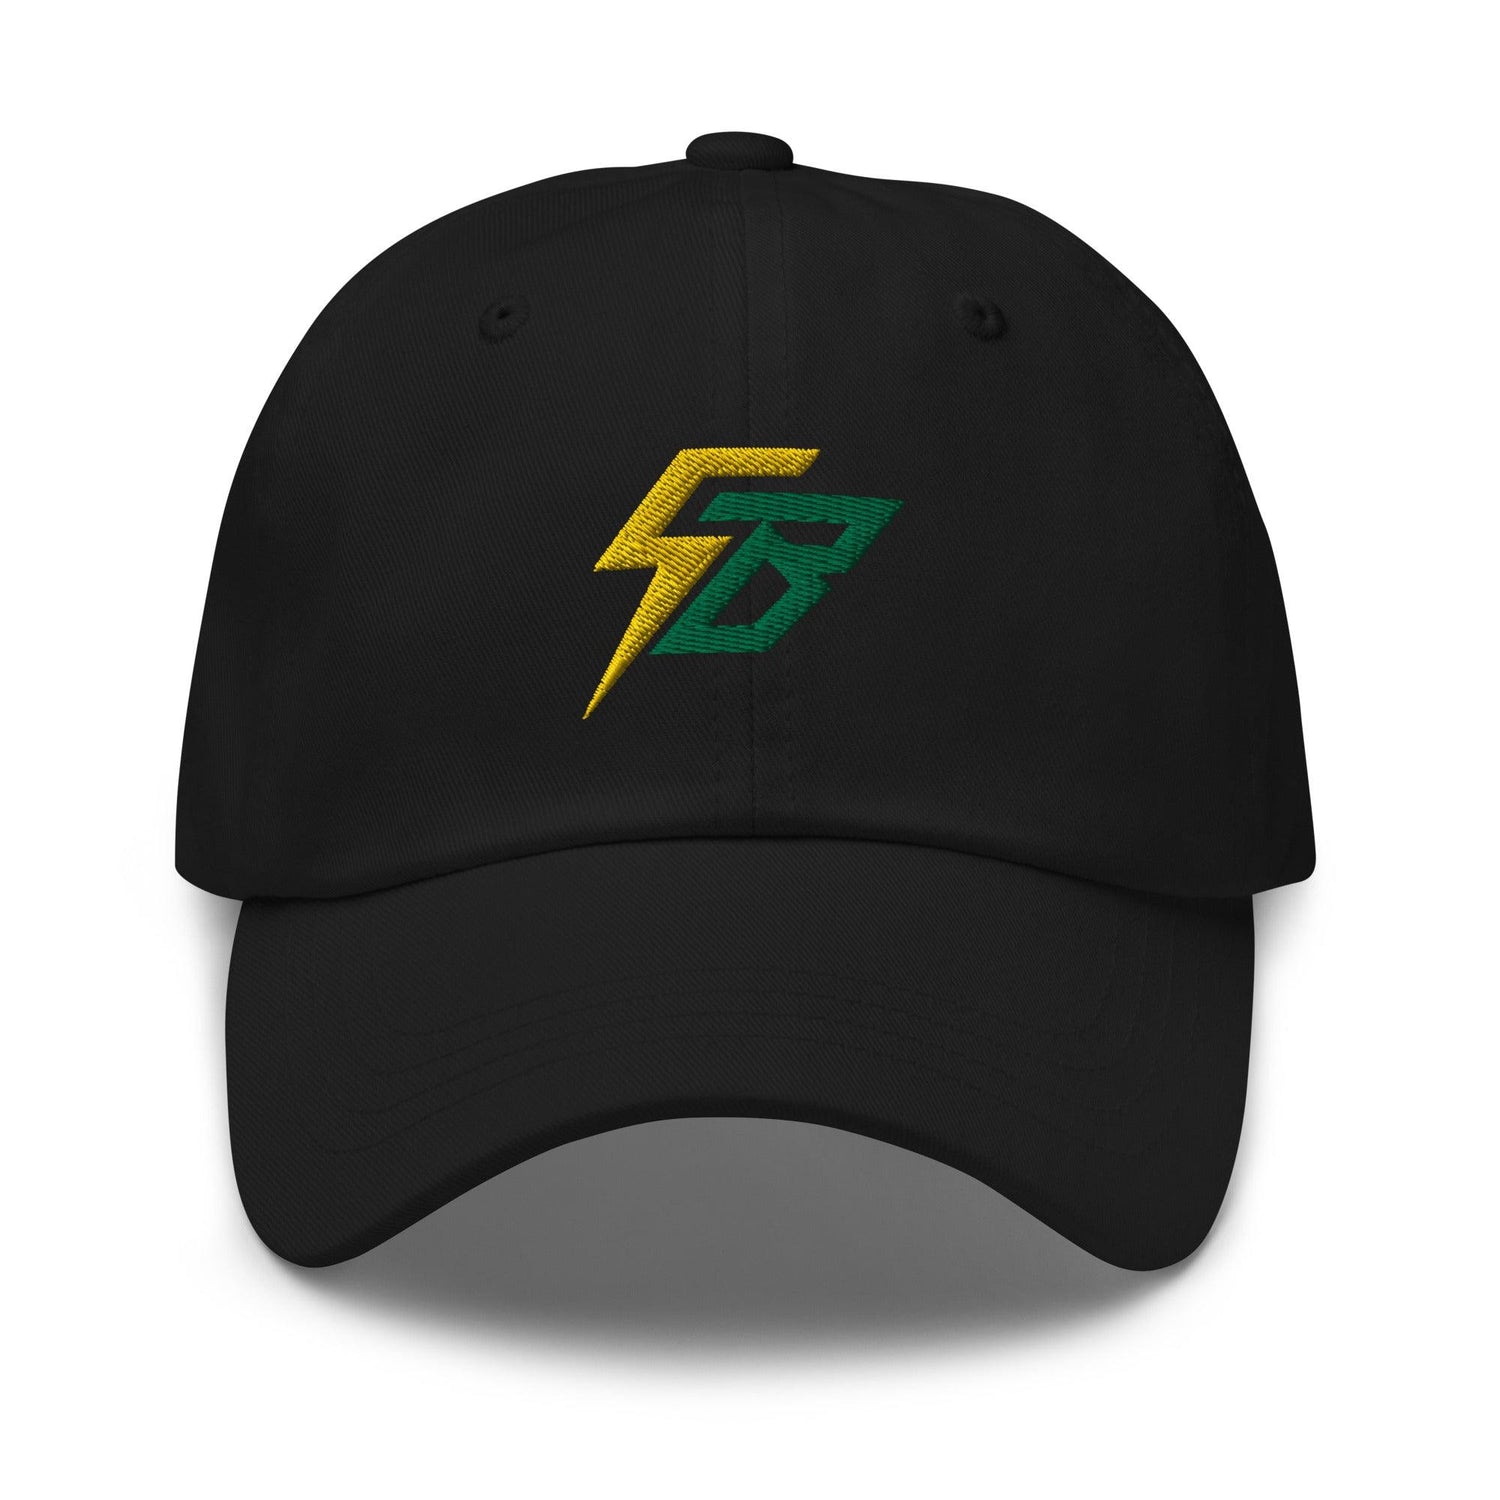 Skye Bolt "Electric" hat - Fan Arch